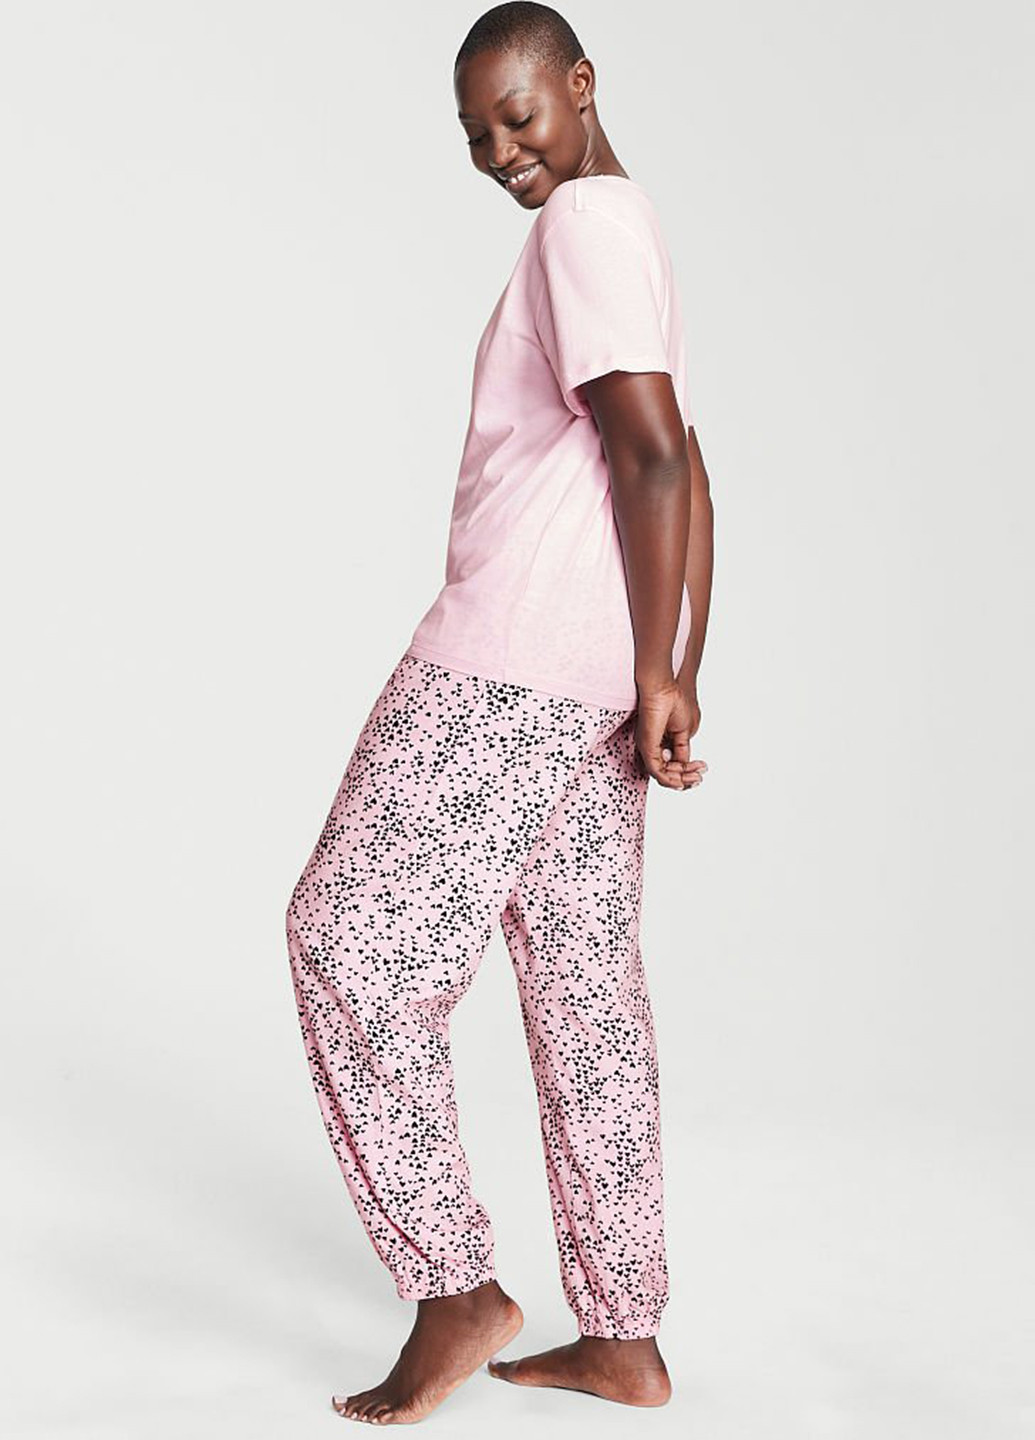 Розовая всесезон пижама (футболка, брюки) футболка + брюки Victoria's Secret